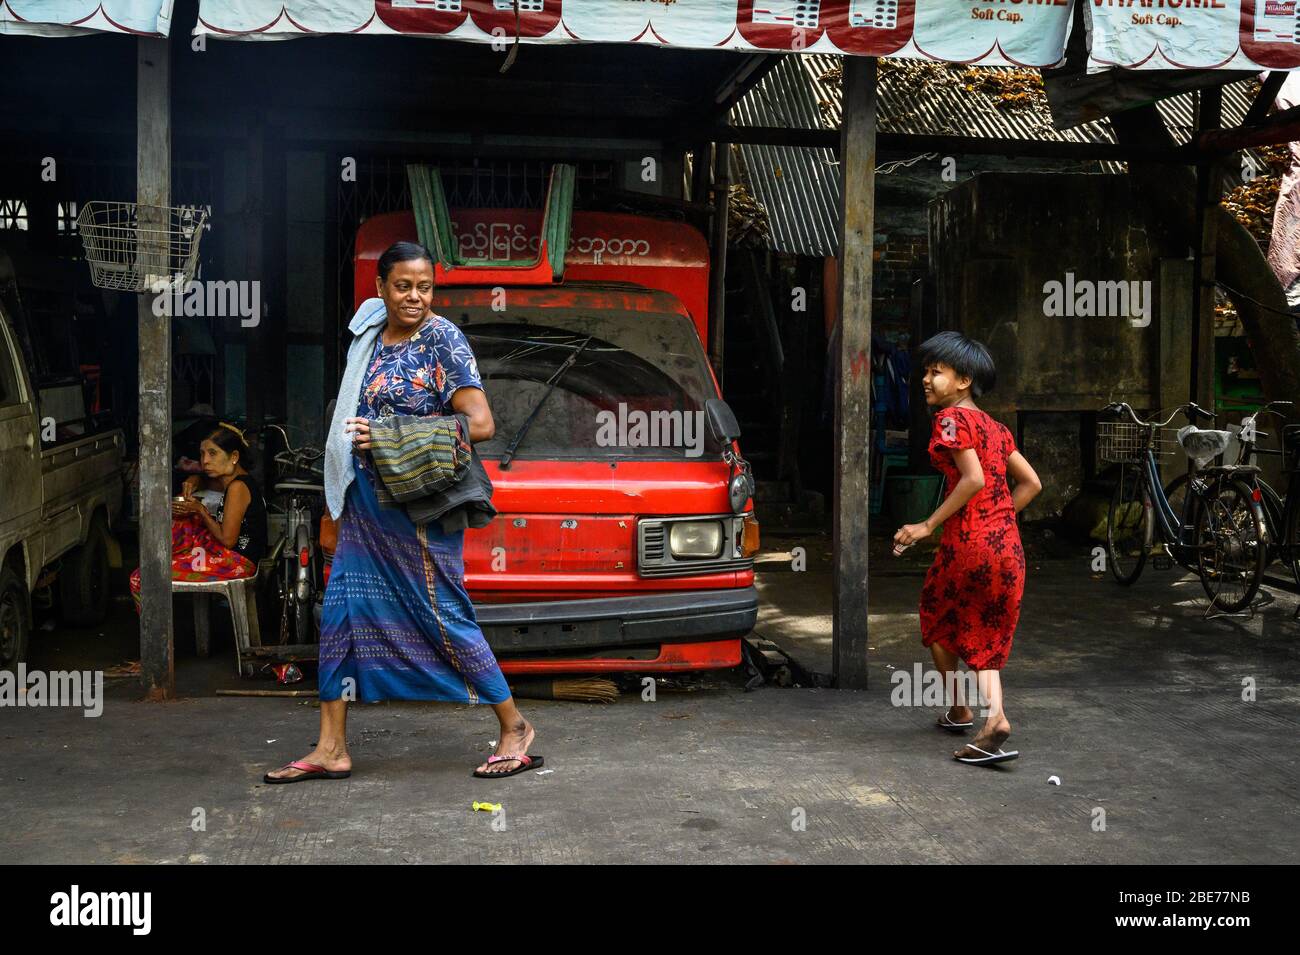 Neighborhood exchange between a woman and young girl, Yangon, Myanmar Stock Photo